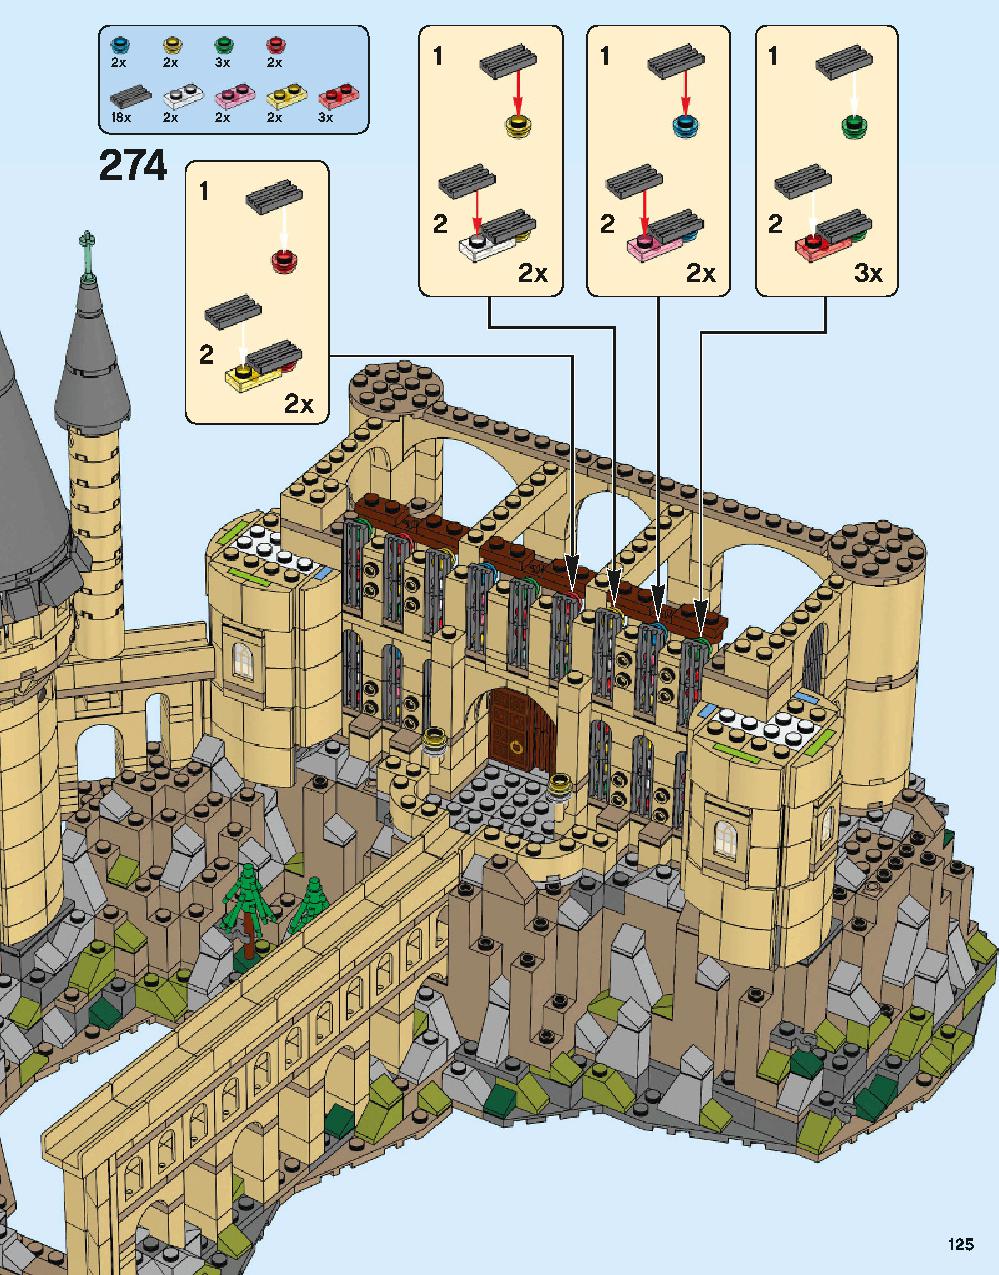 ホグワーツ城 71043 レゴの商品情報 レゴの説明書・組立方法 125 page